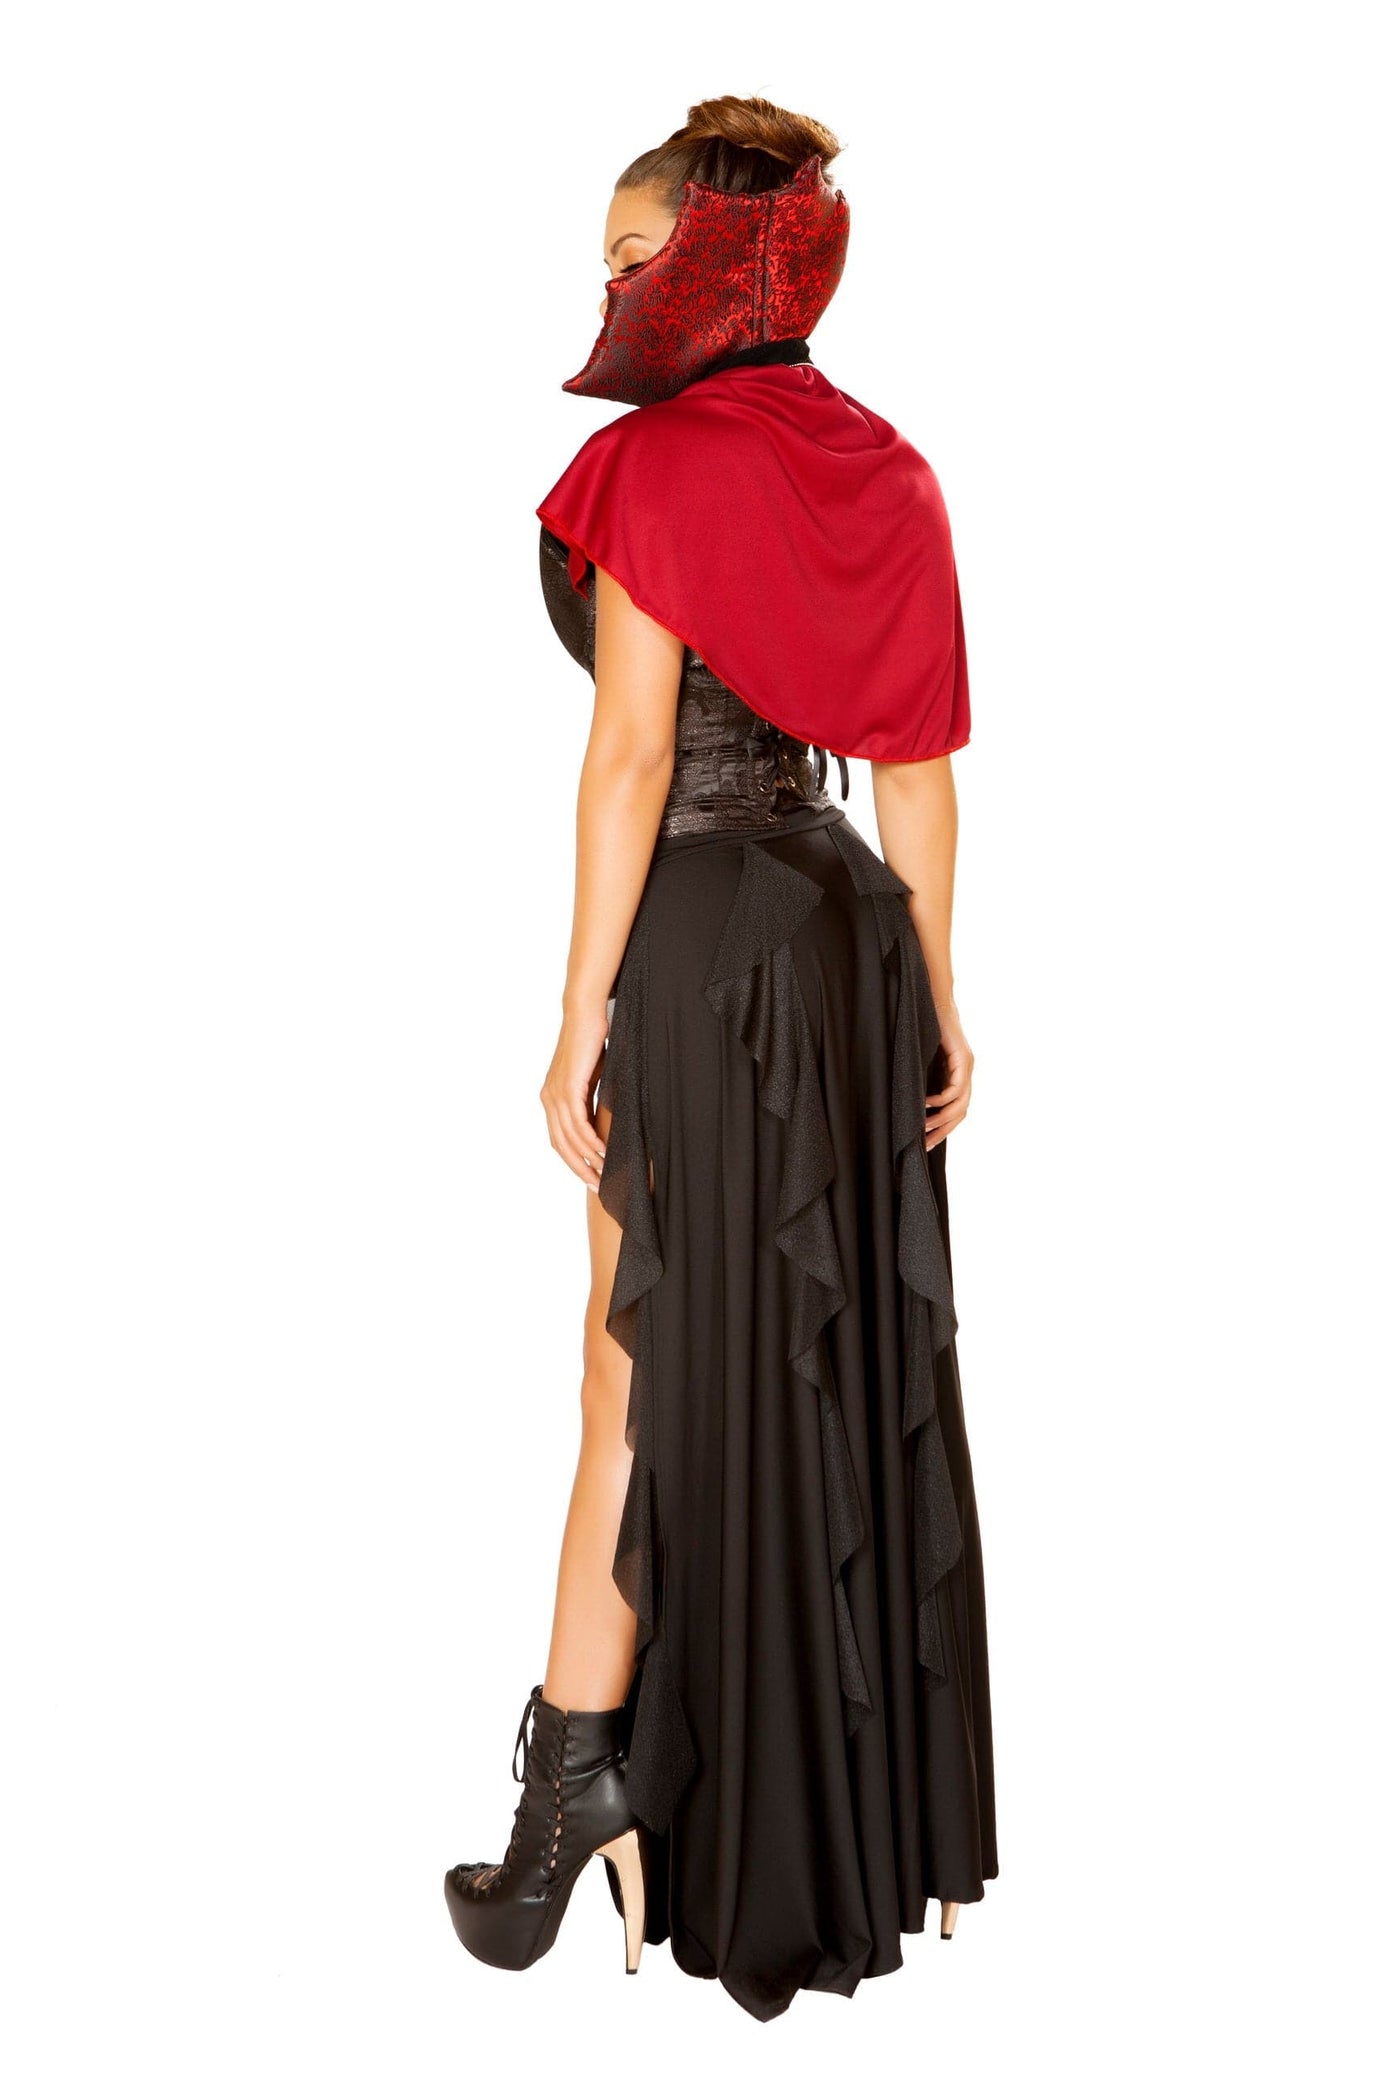 3pc. Blood Lusting Vampire Women's Costume - For Love of Lingerie